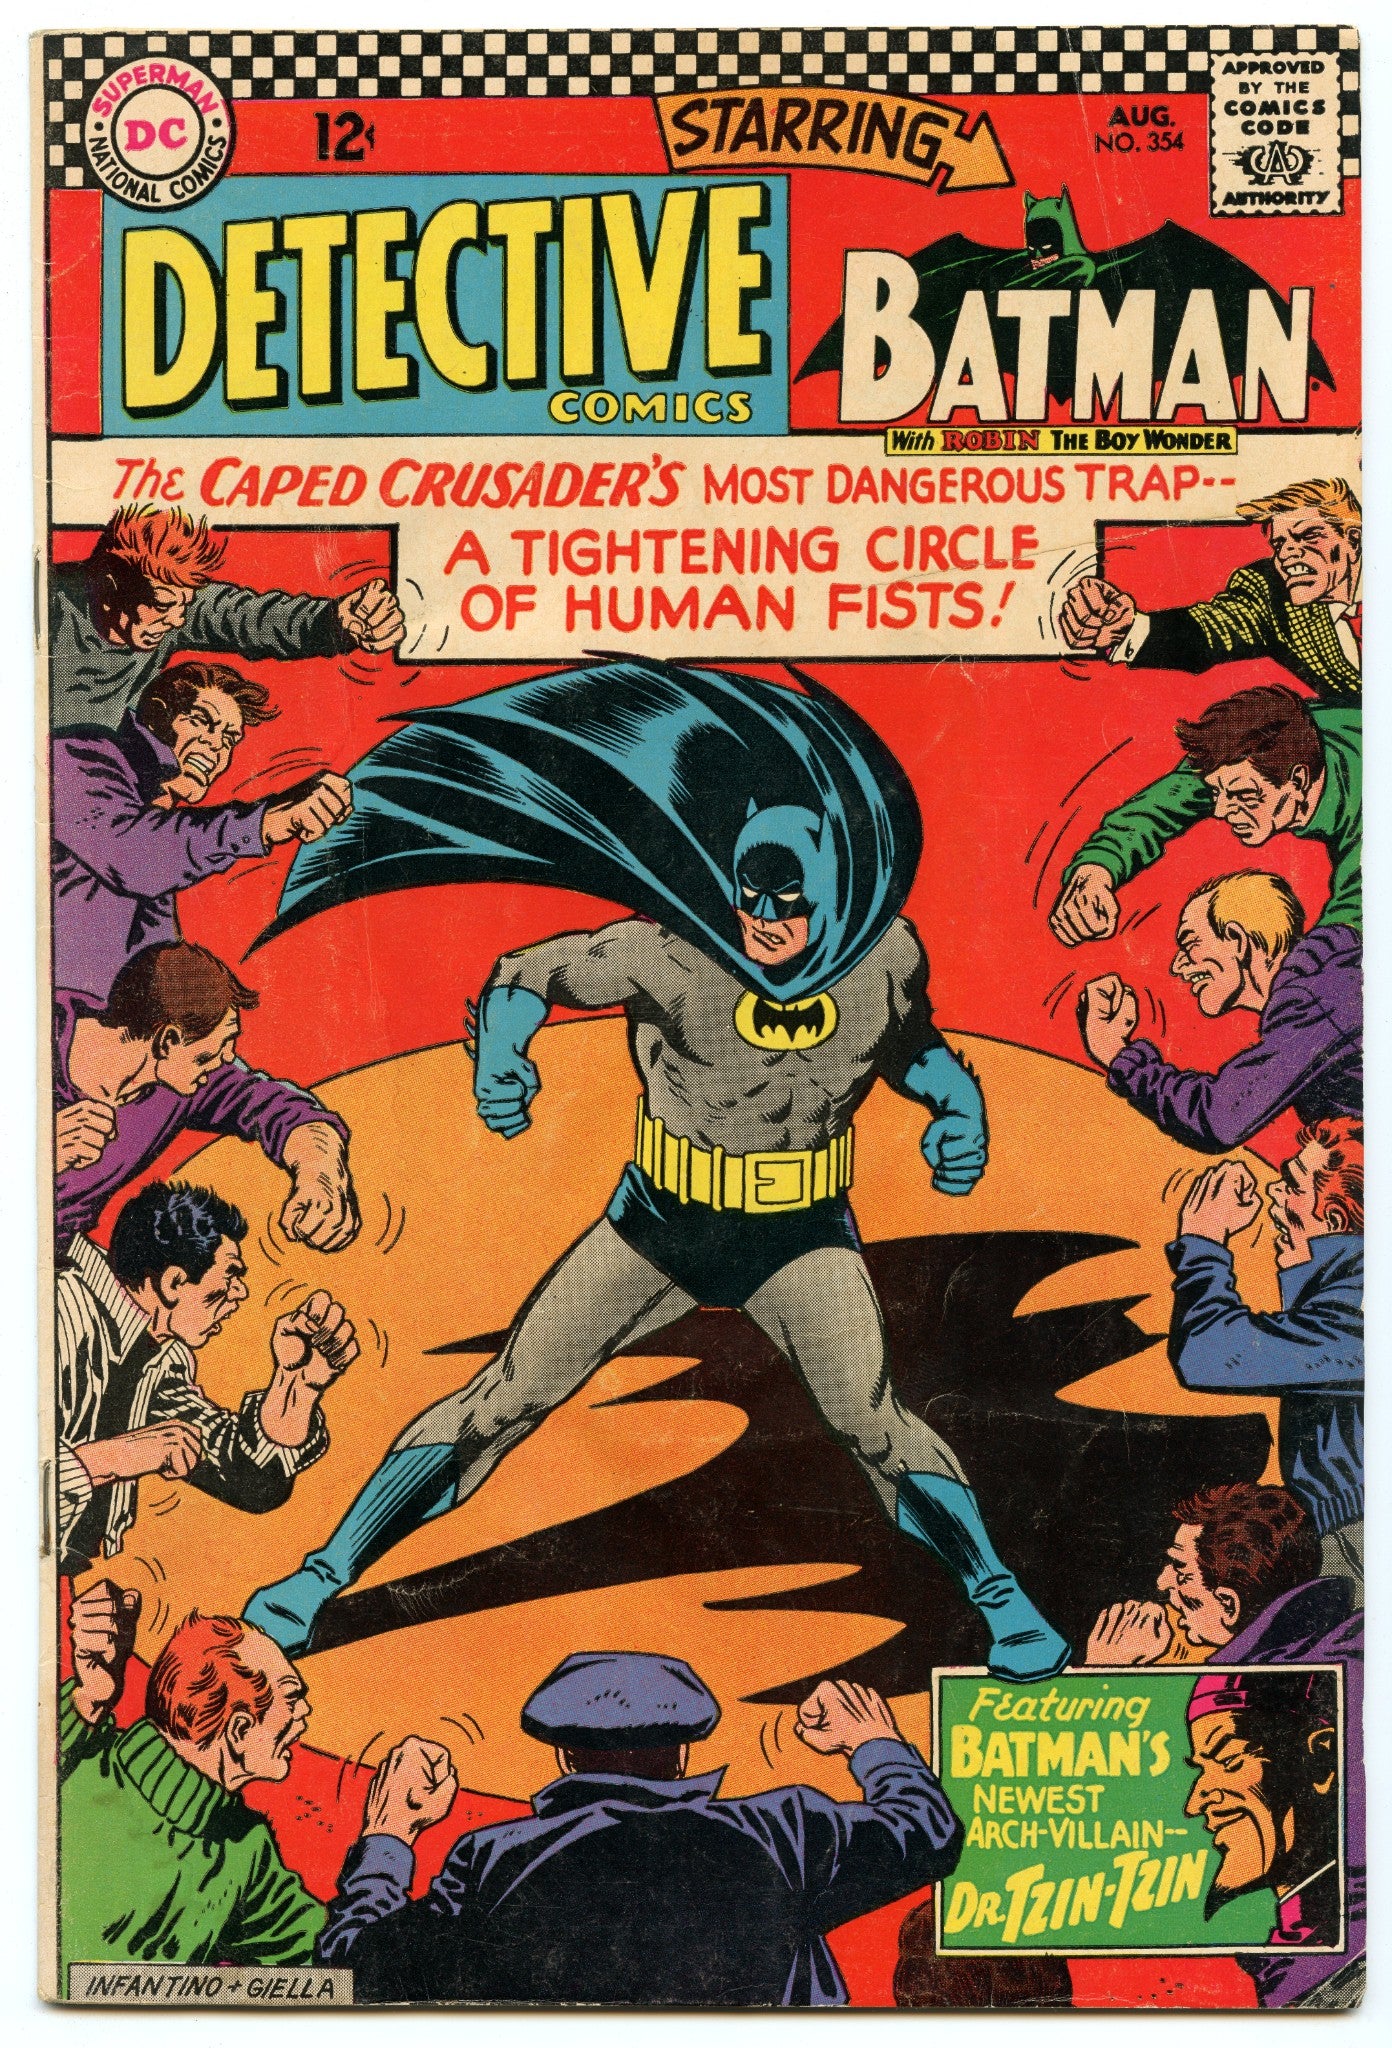 Detective Comics 354 (Aug 1966) VG+ (4.5)